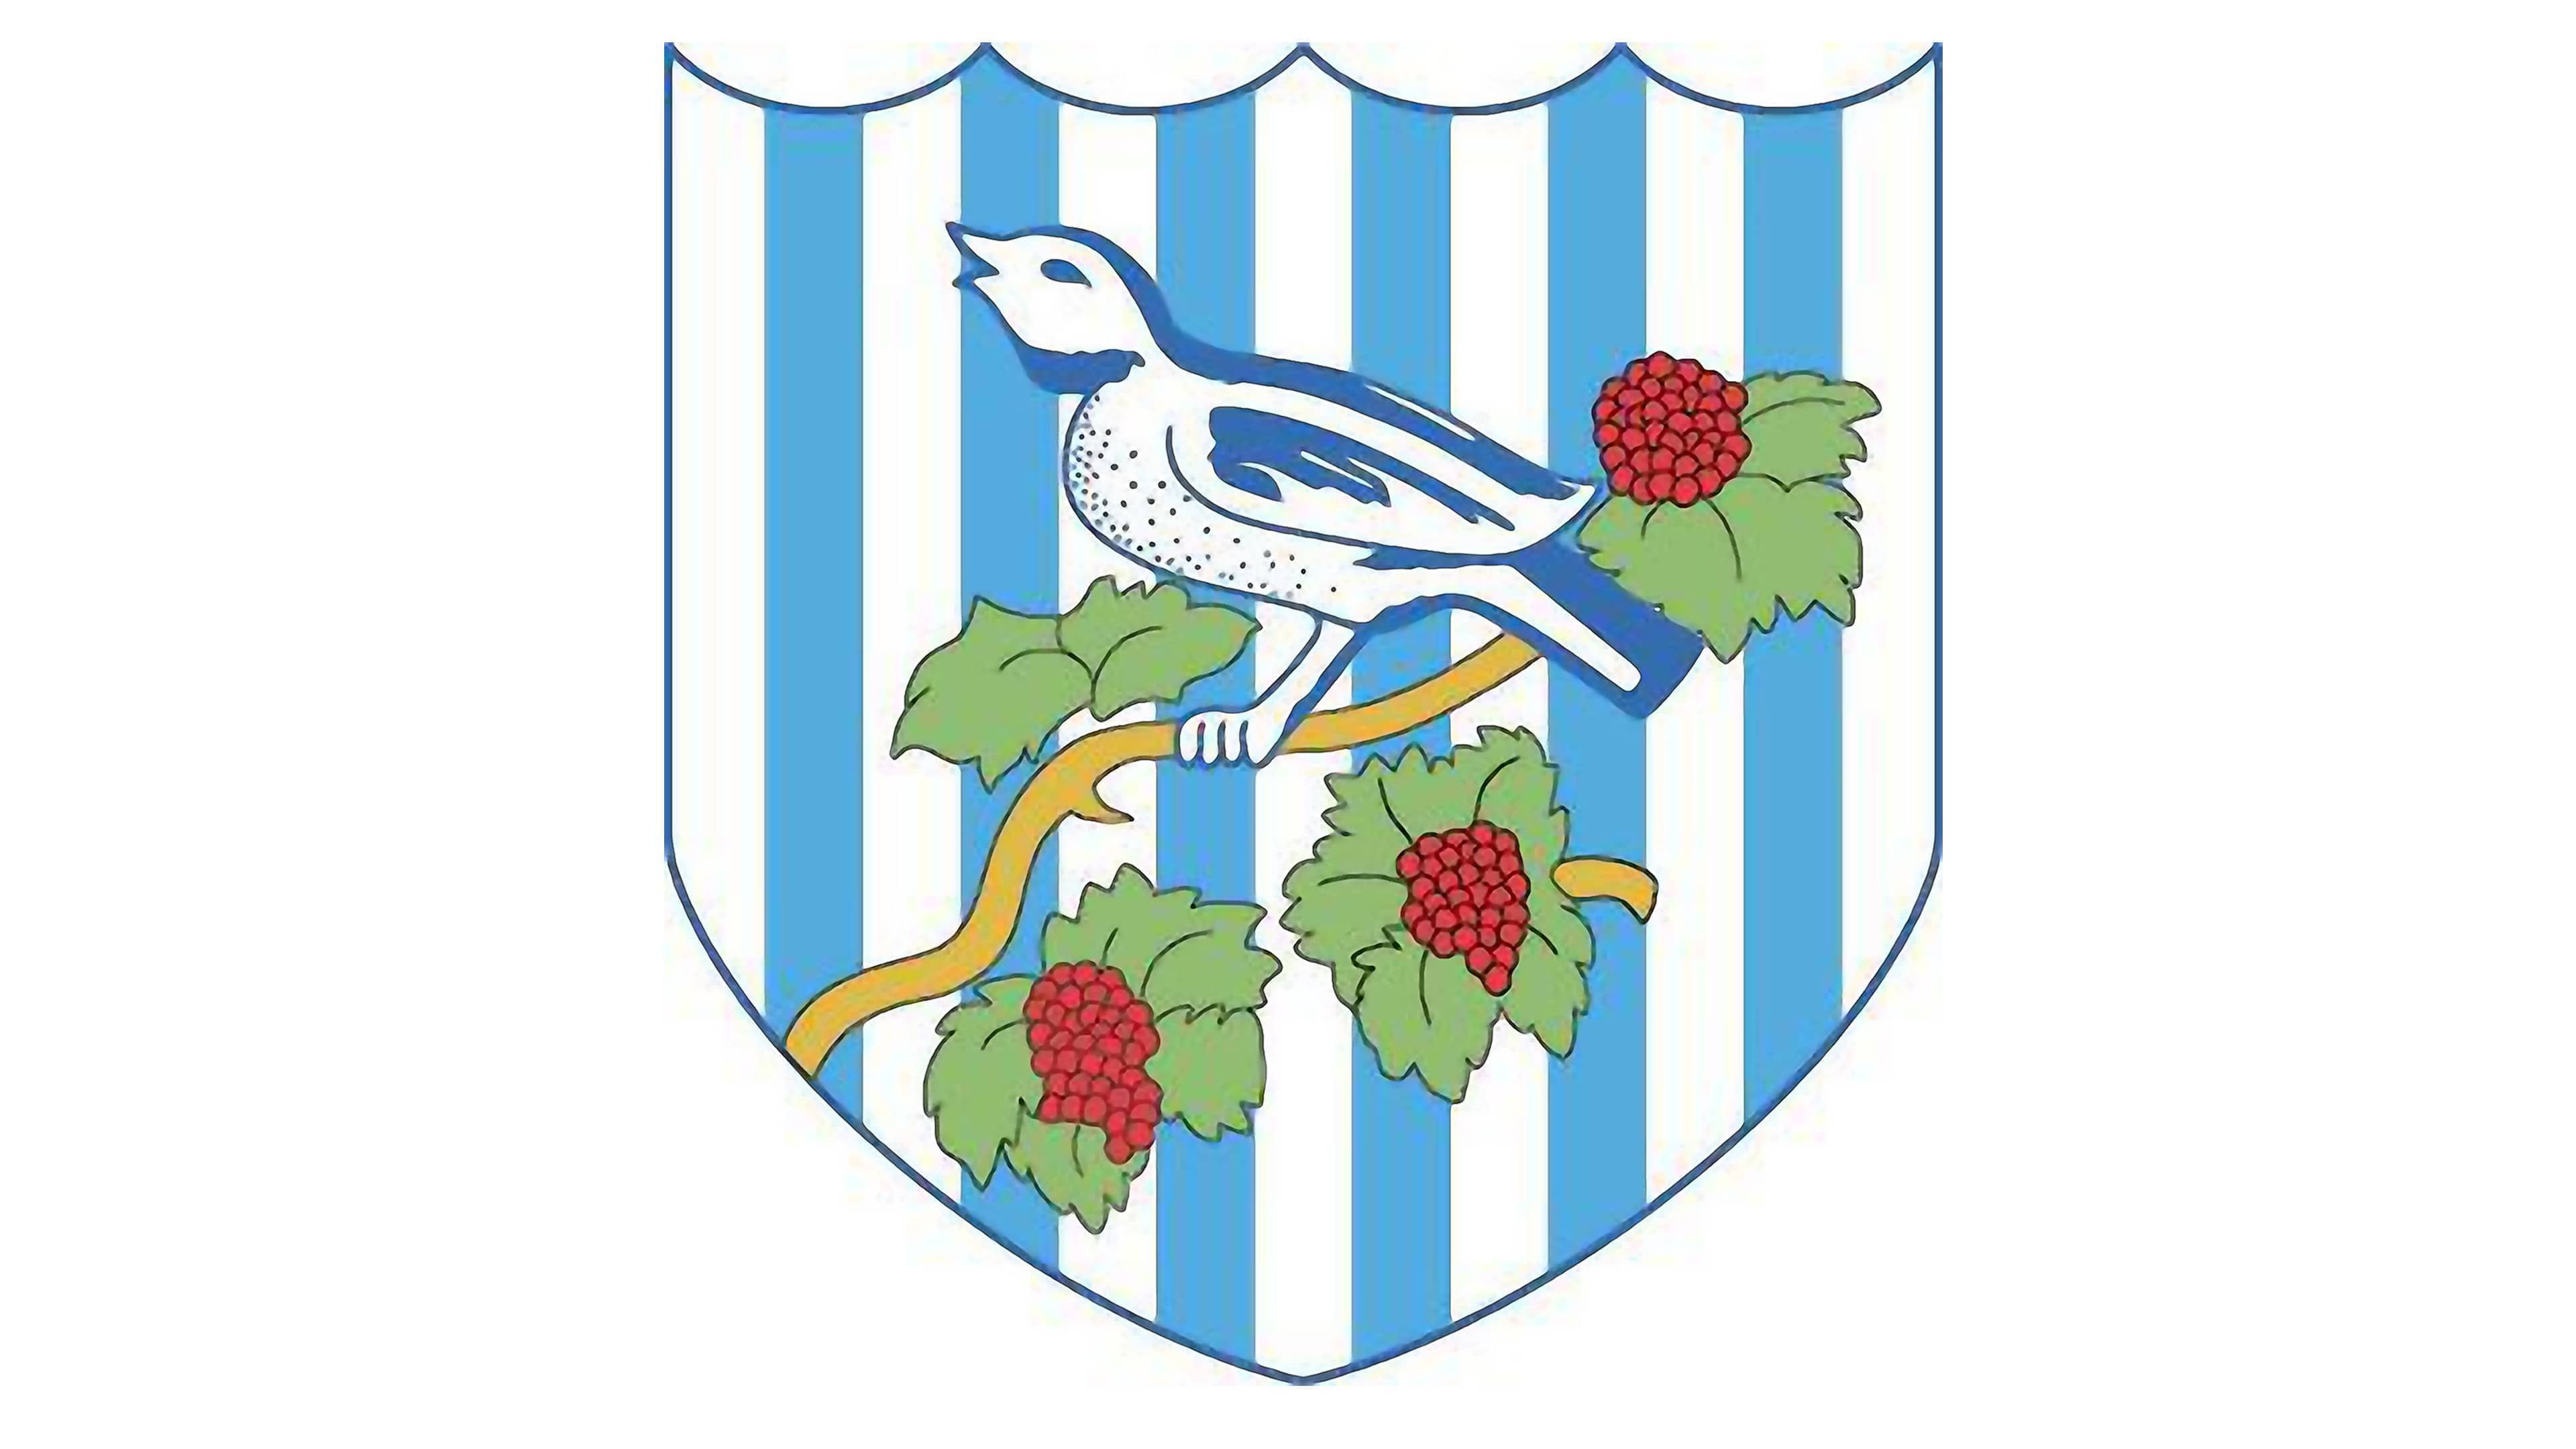 West Bromwich Albion Club Logo Symbol Black Premier League